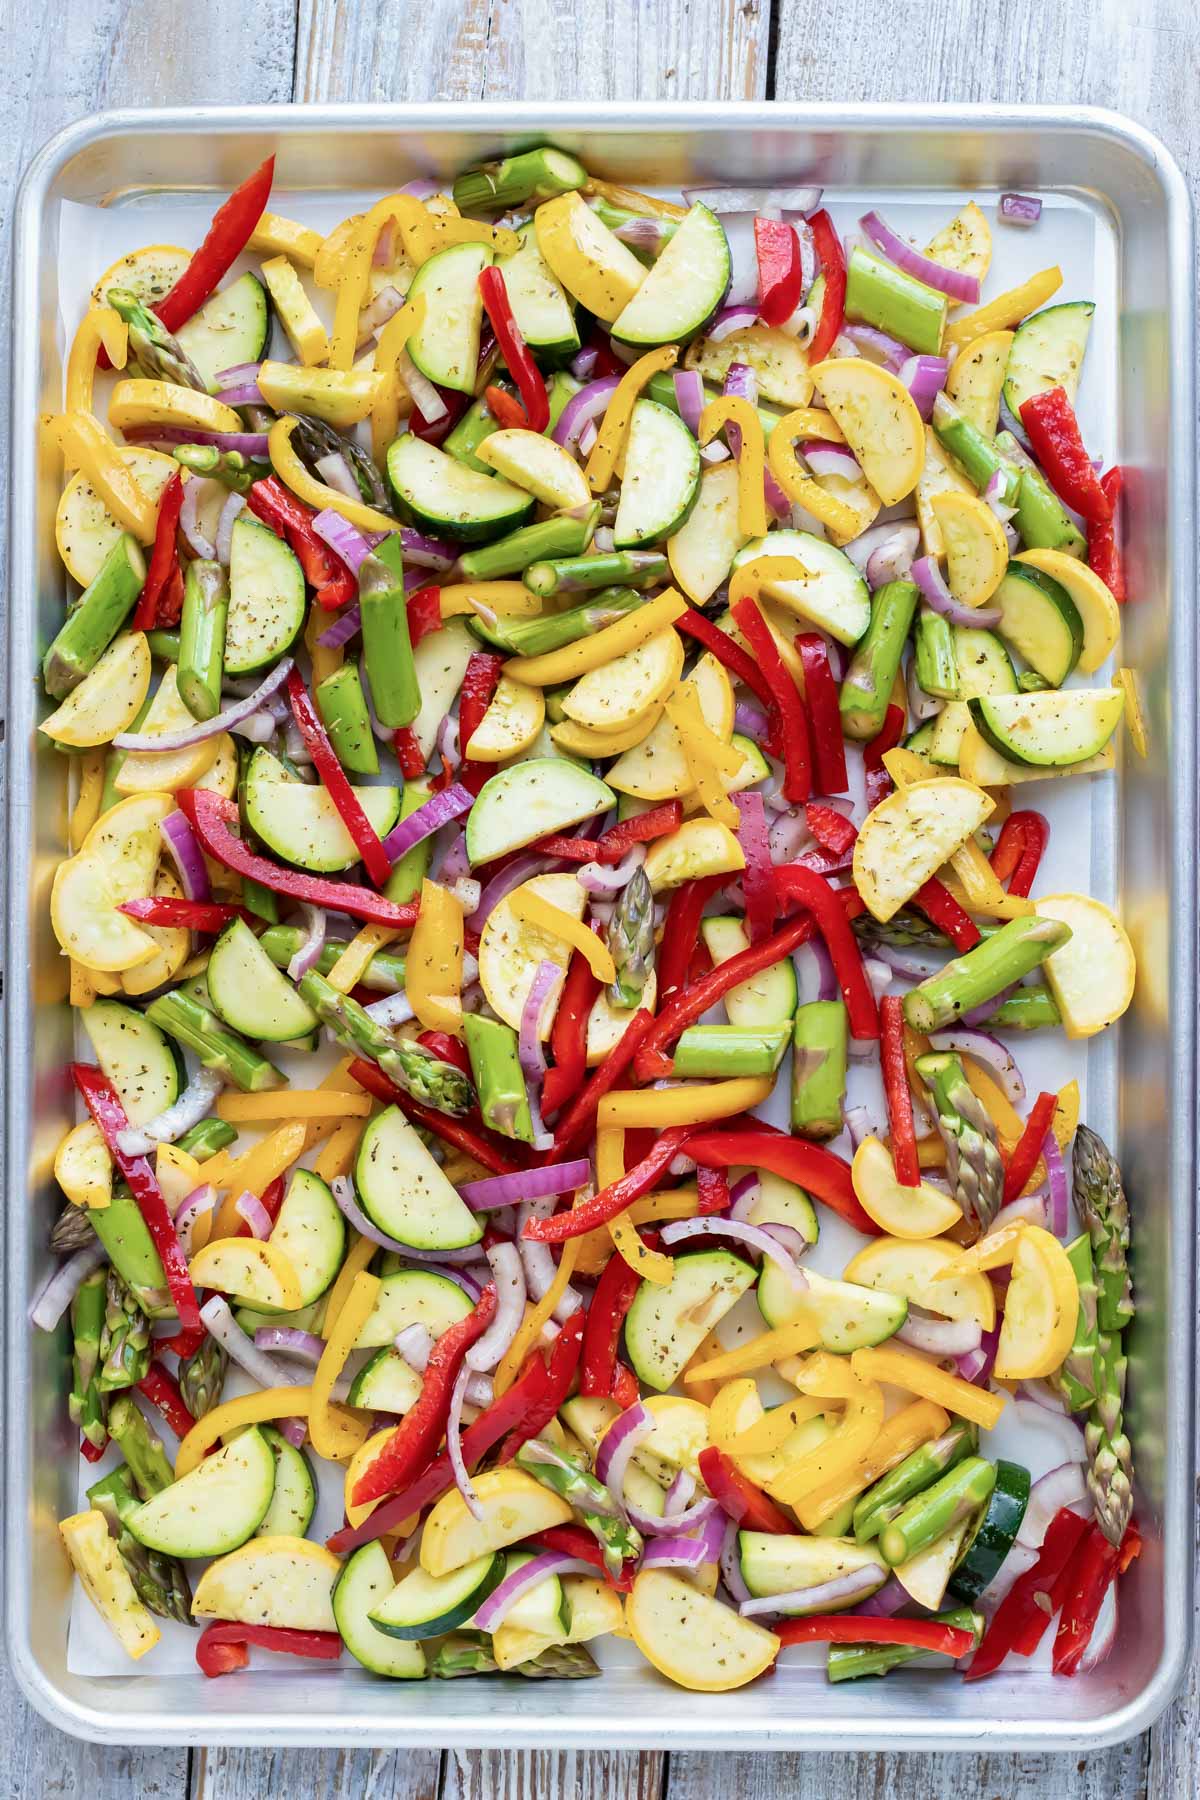 A large sheet pan full of roasted veggies.